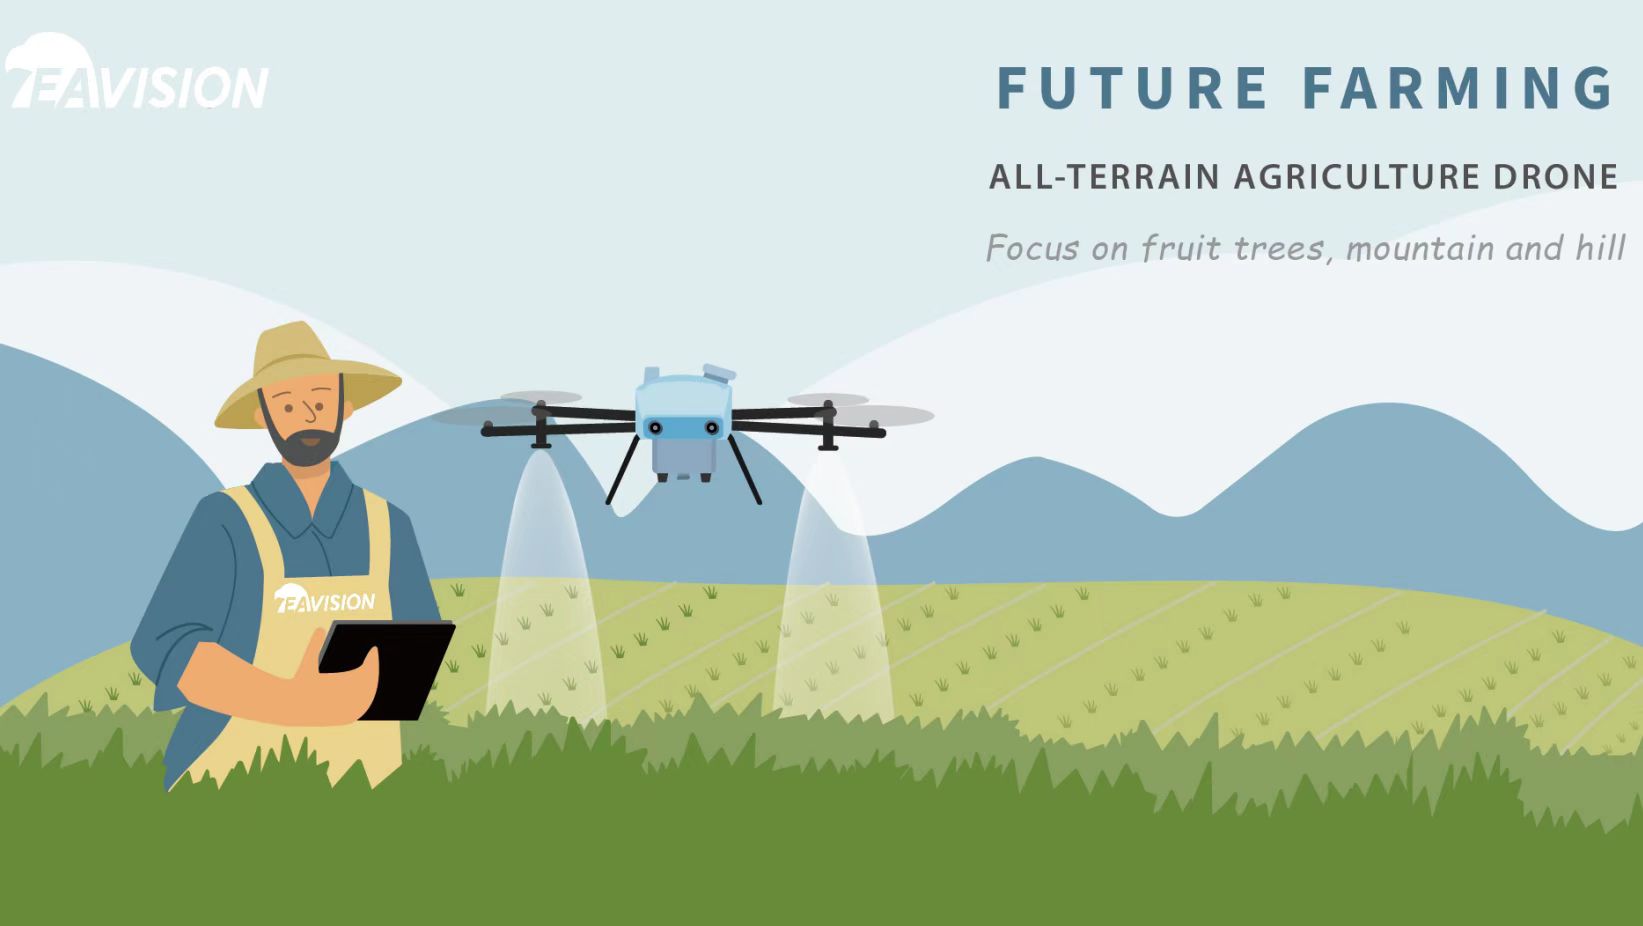 fumigación agrícola con drones para soja y maíz
